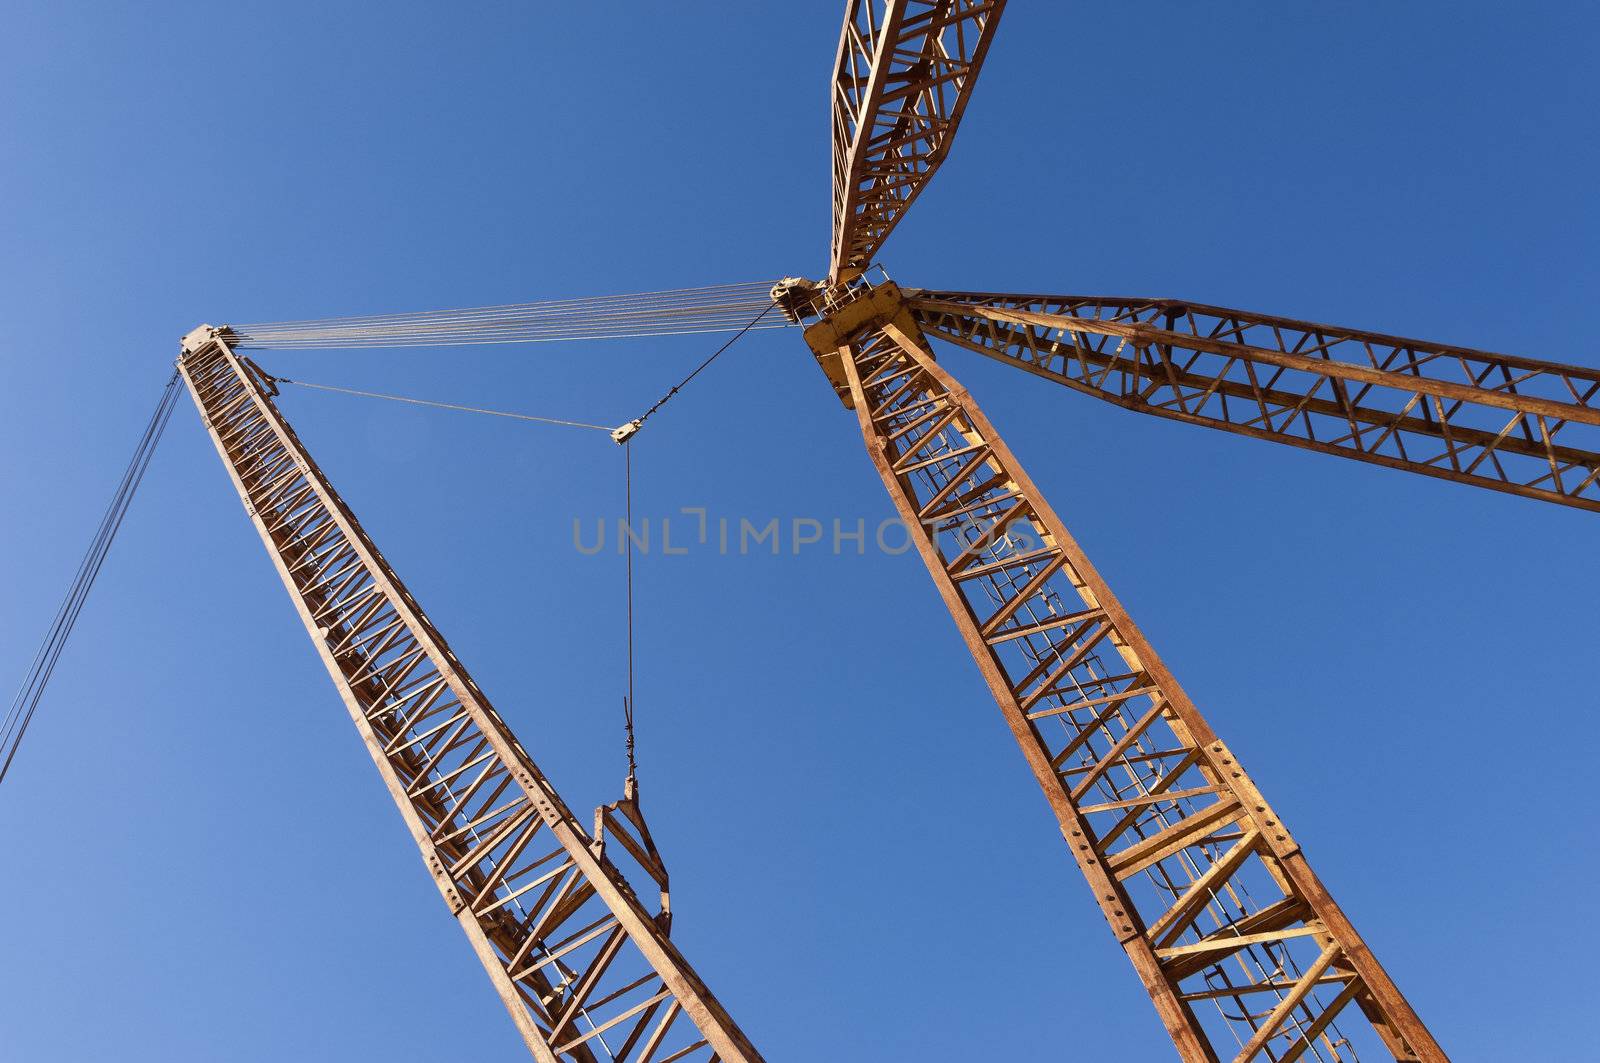 Quarry crane by mrfotos